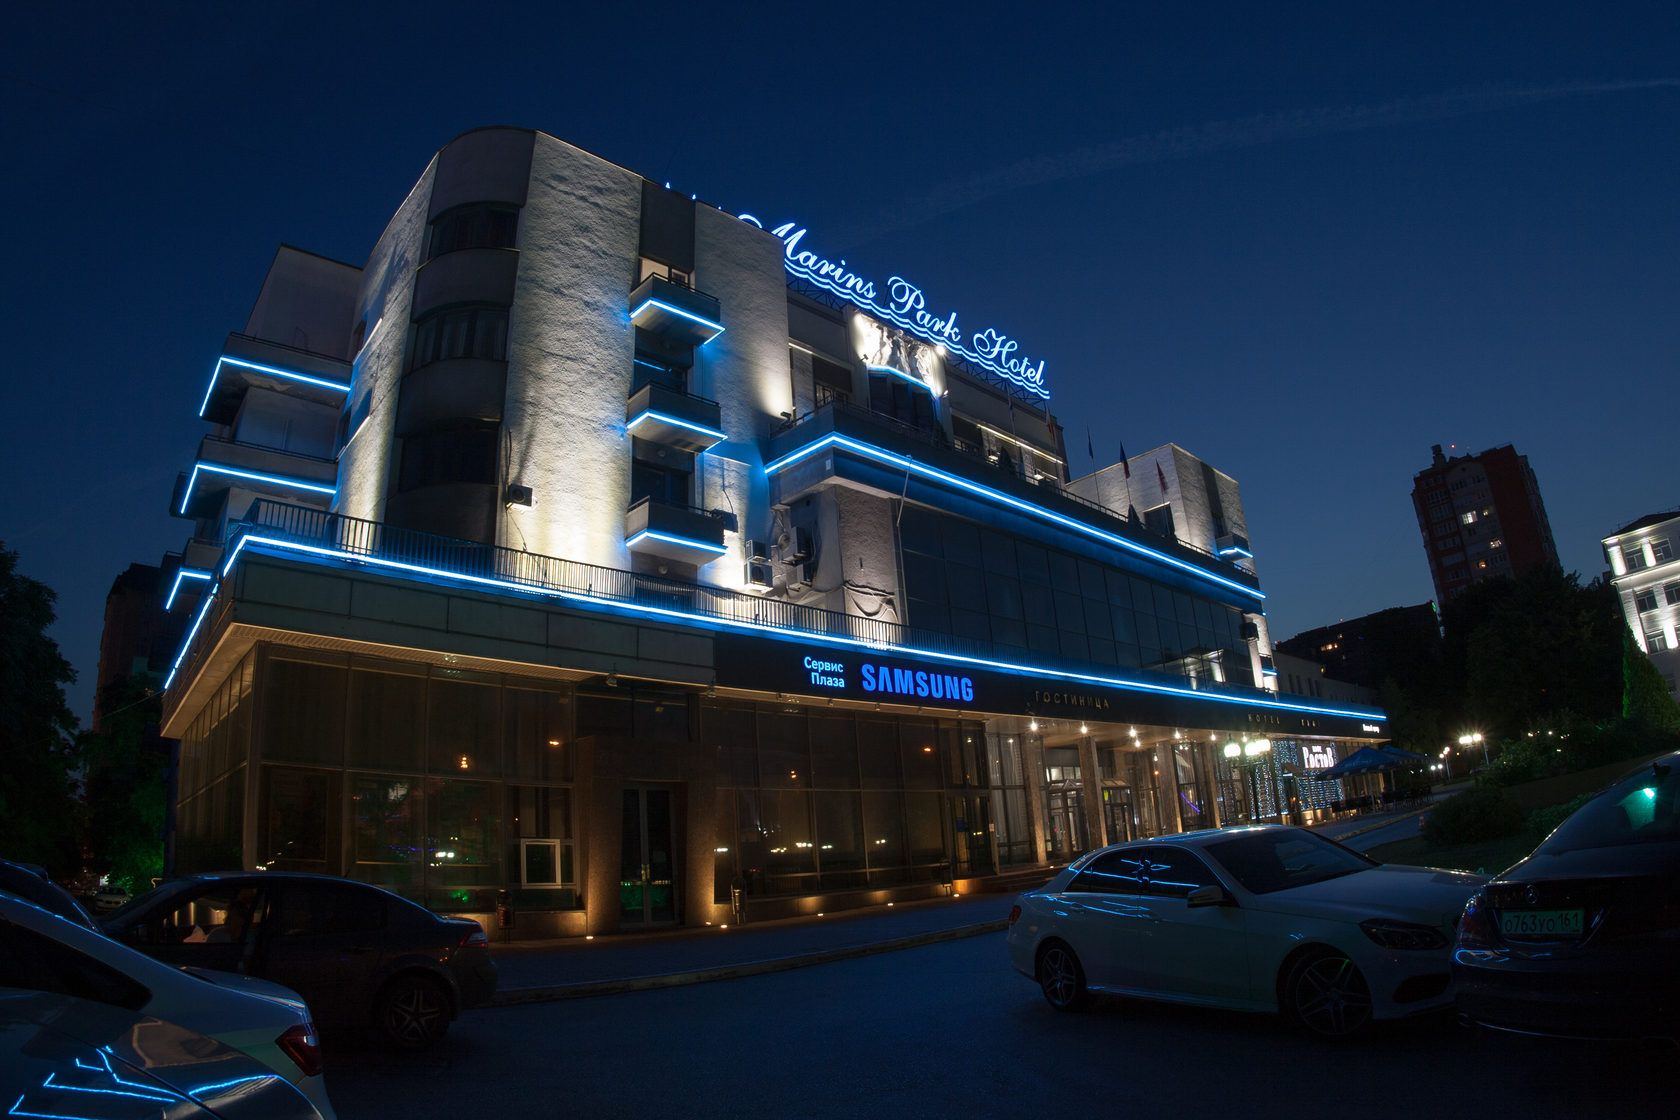 «Marins Park Hotel» - освещение культурно-развлекательного центра, Ростов-на-Дону, 2015